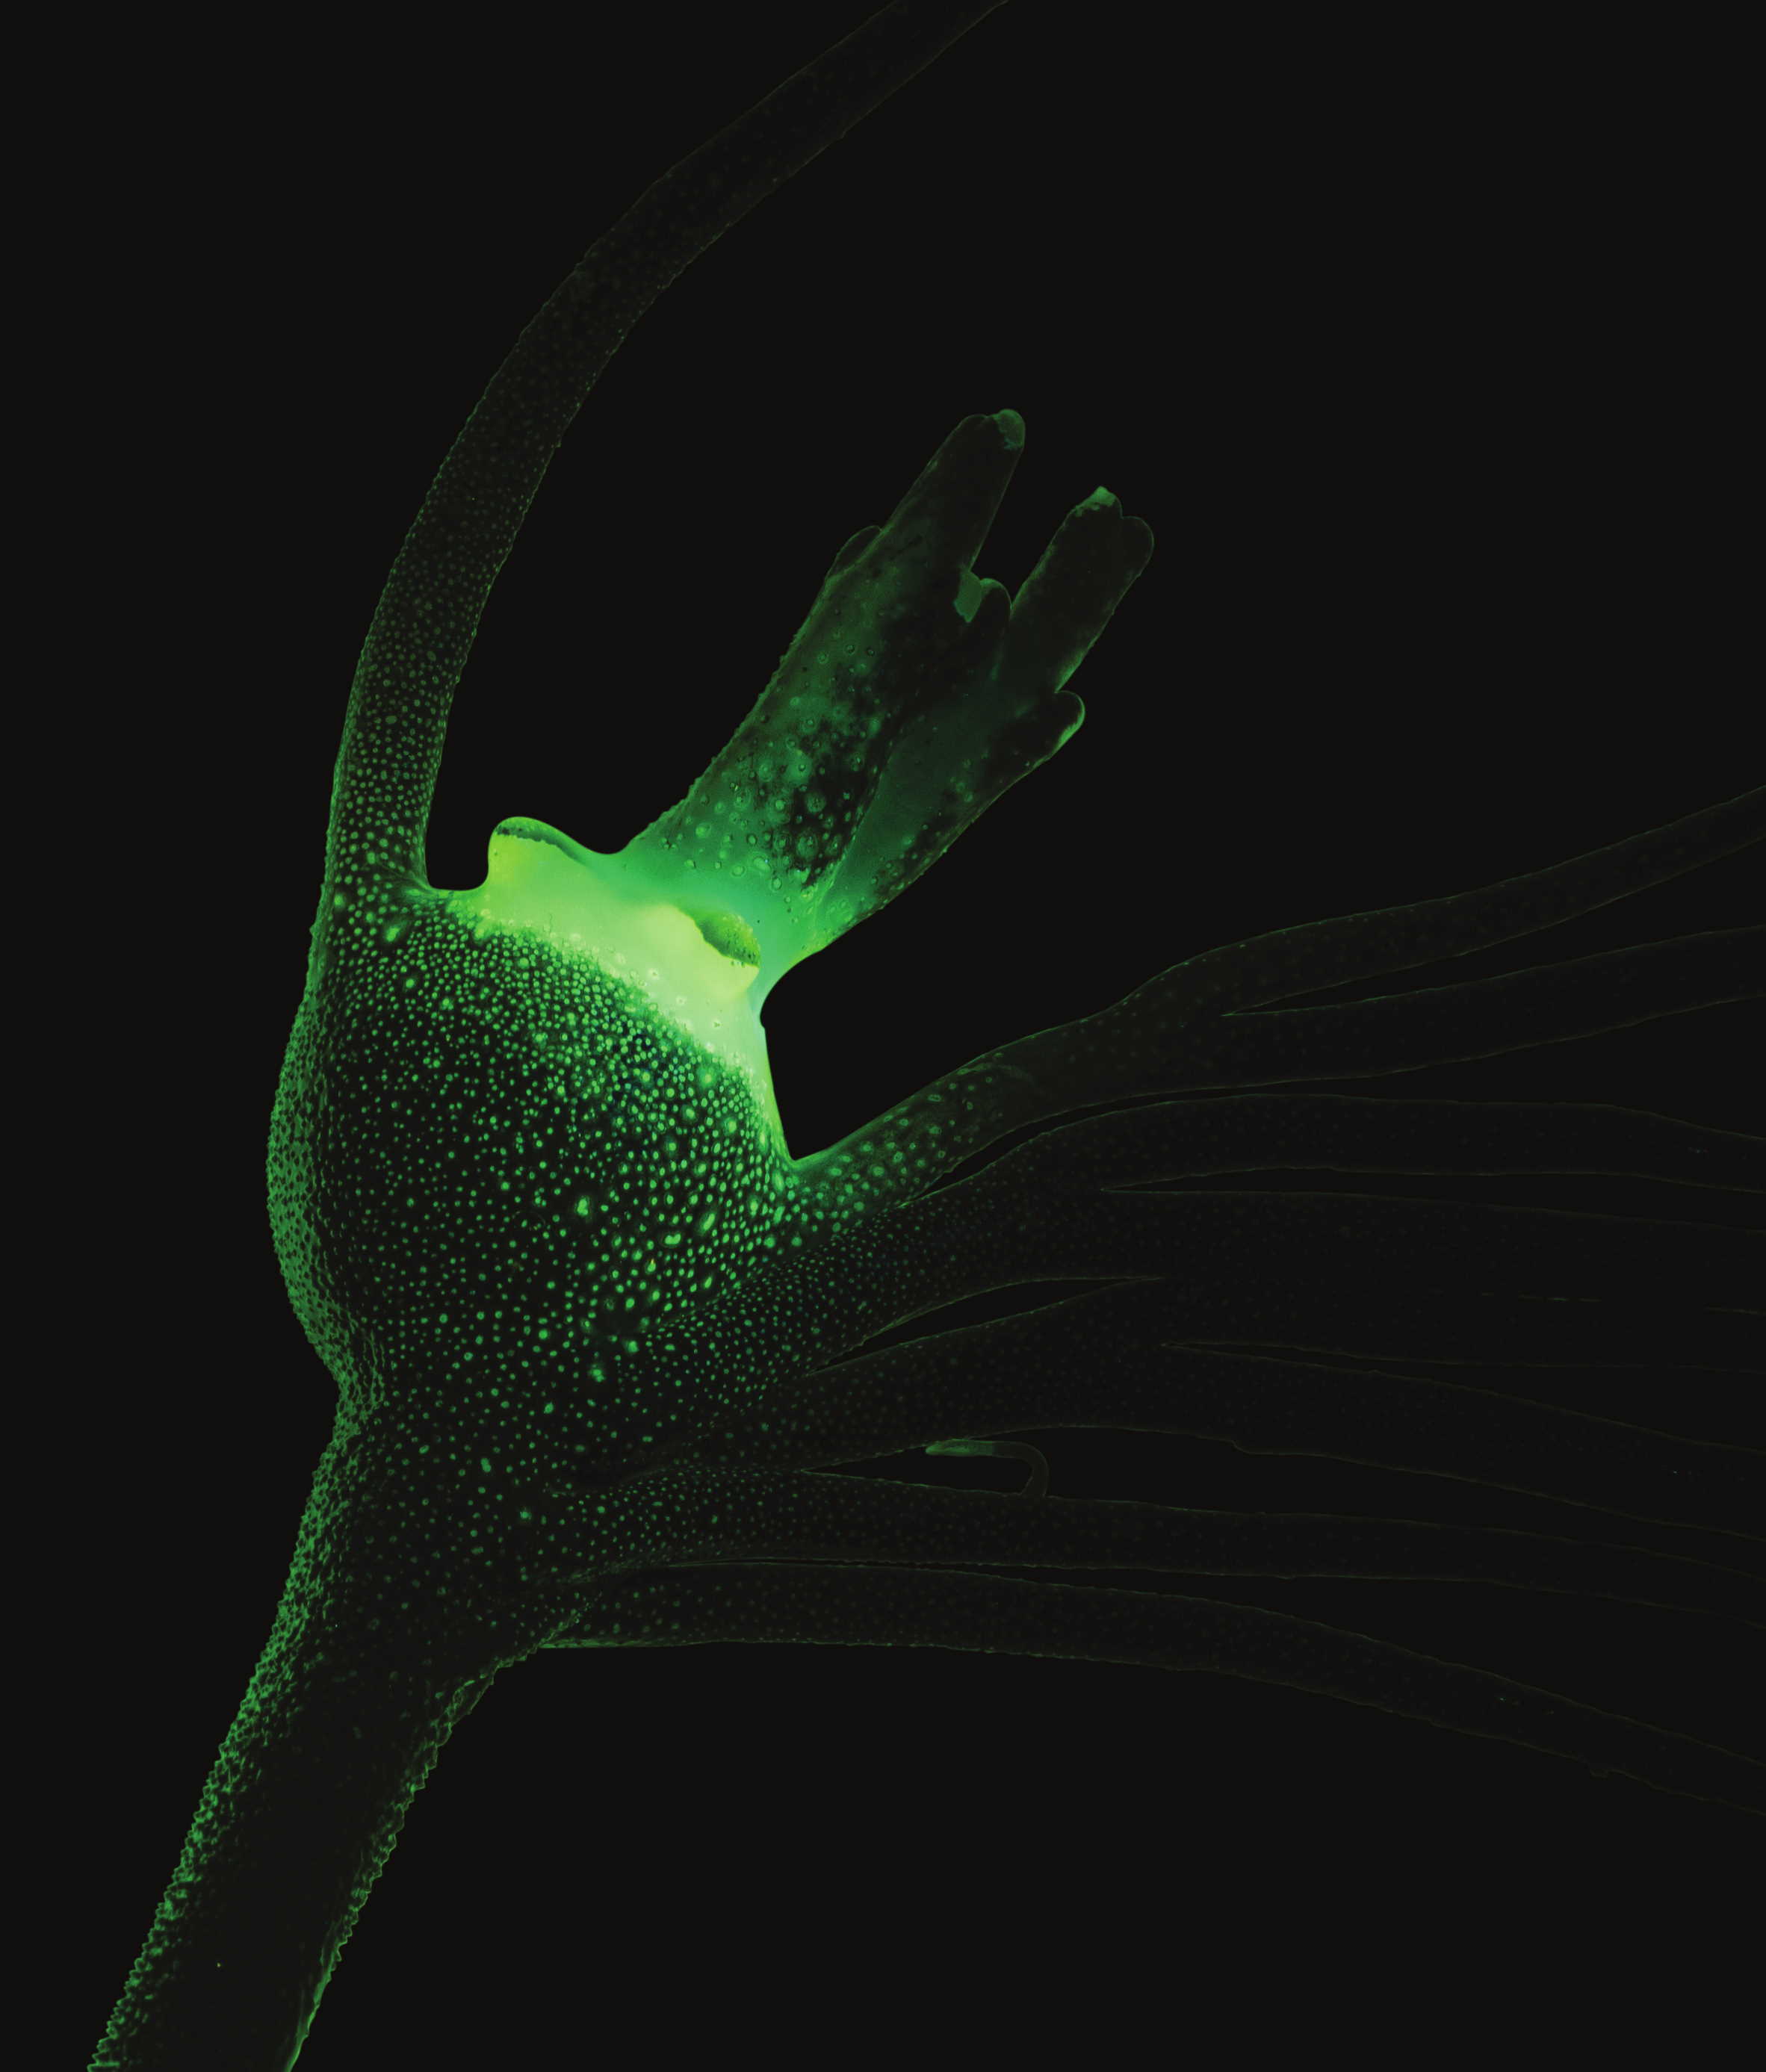 Зелена флуоресценція приманки риби-вудильника за опромінення синім світлом.&amp;nbsp;William В. Ludt, Todd R. Clardy /Journal of Fish Biology, 2022